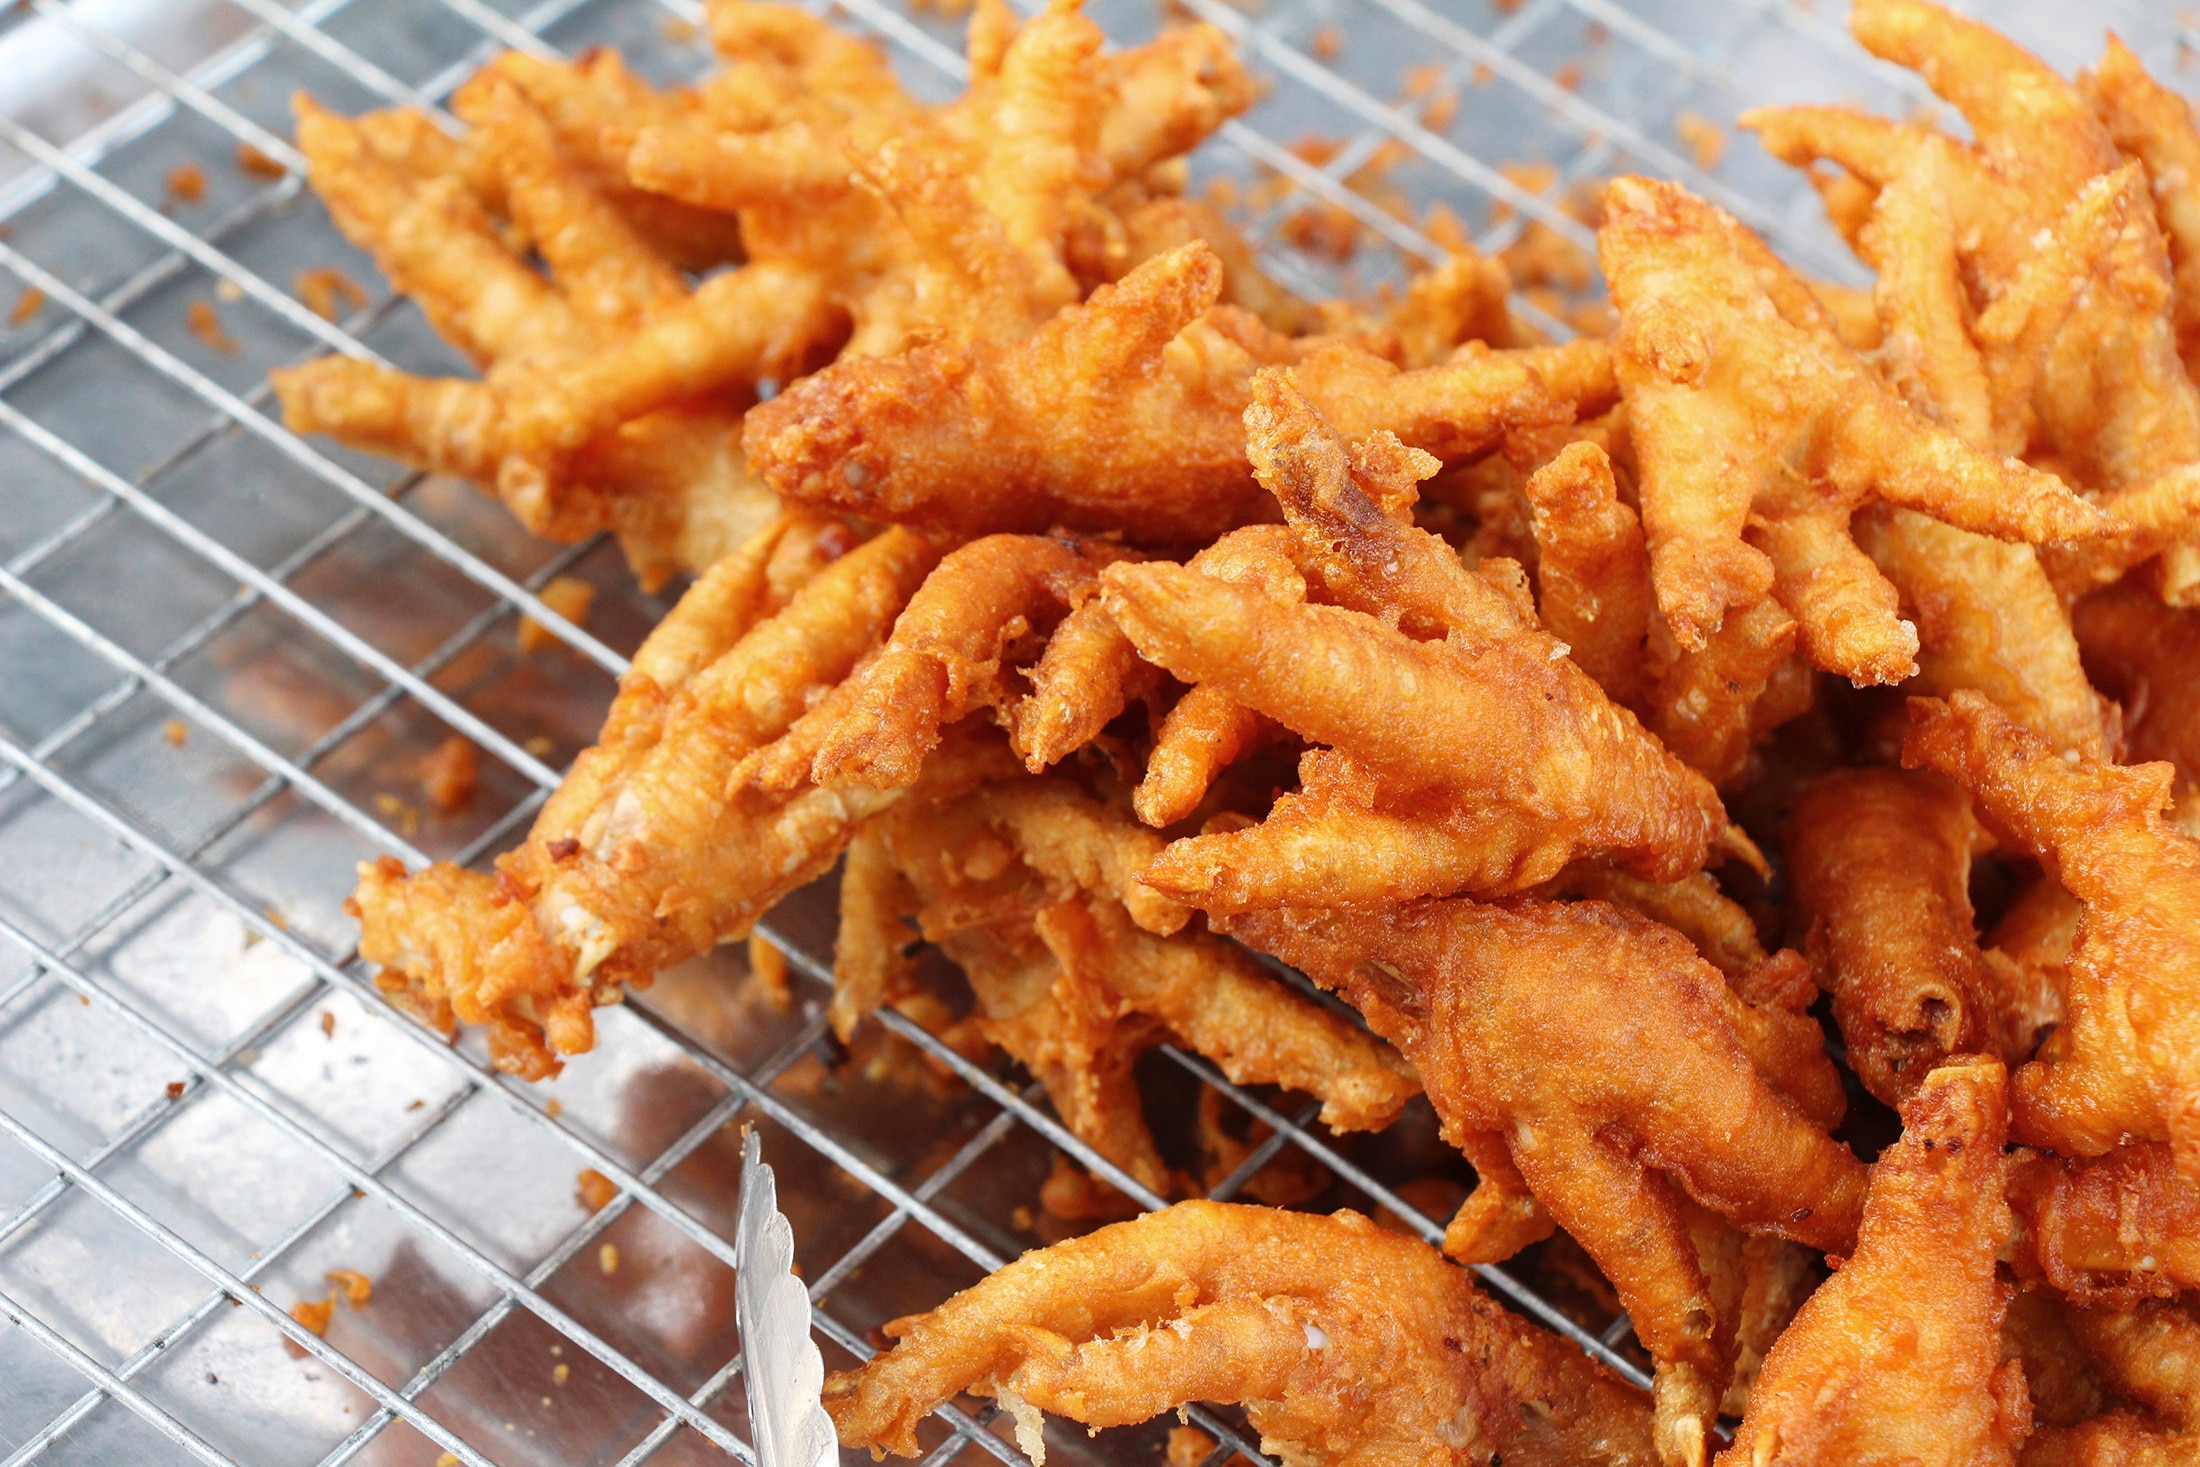 A tray of deep-fried, golden brown chicken feet